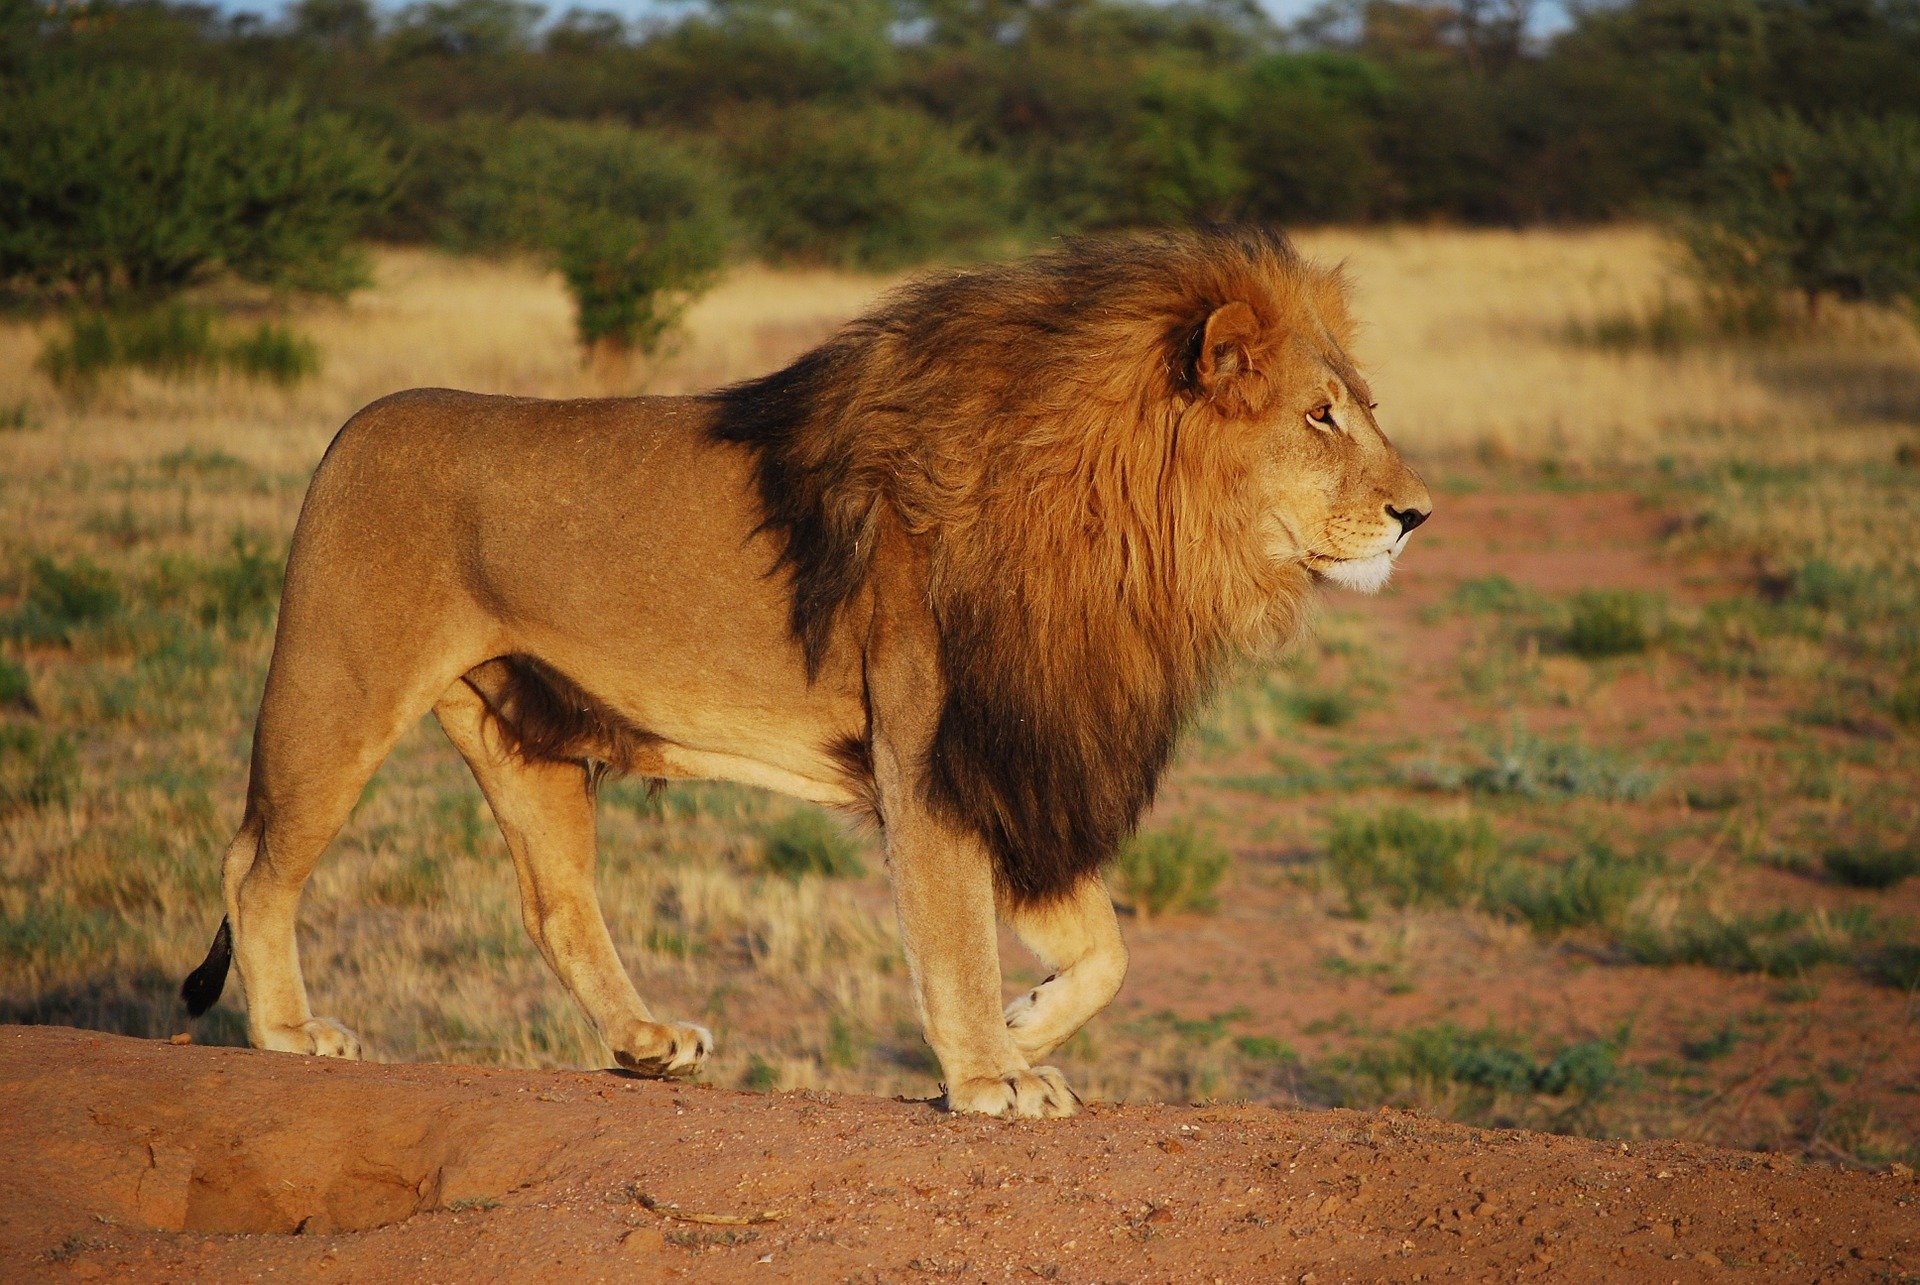 The lion wasn't real either! | Photo: Pixabay/Gerhild Klinkow